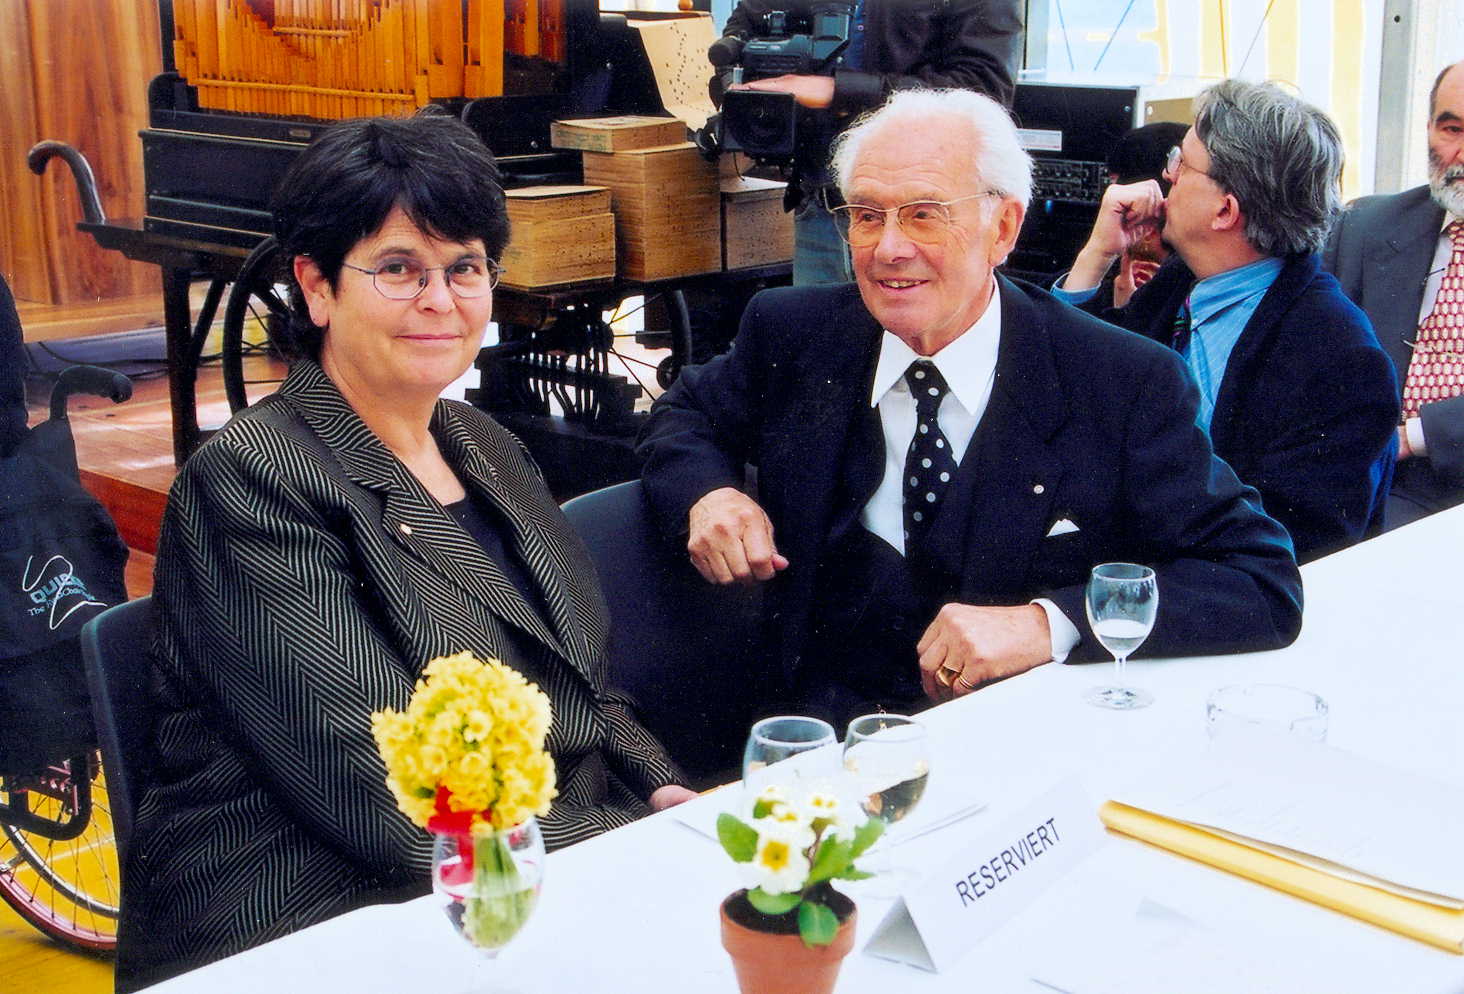 Eröffnung 2000 - Ruth Dreifuss mit Heinrich Weiss